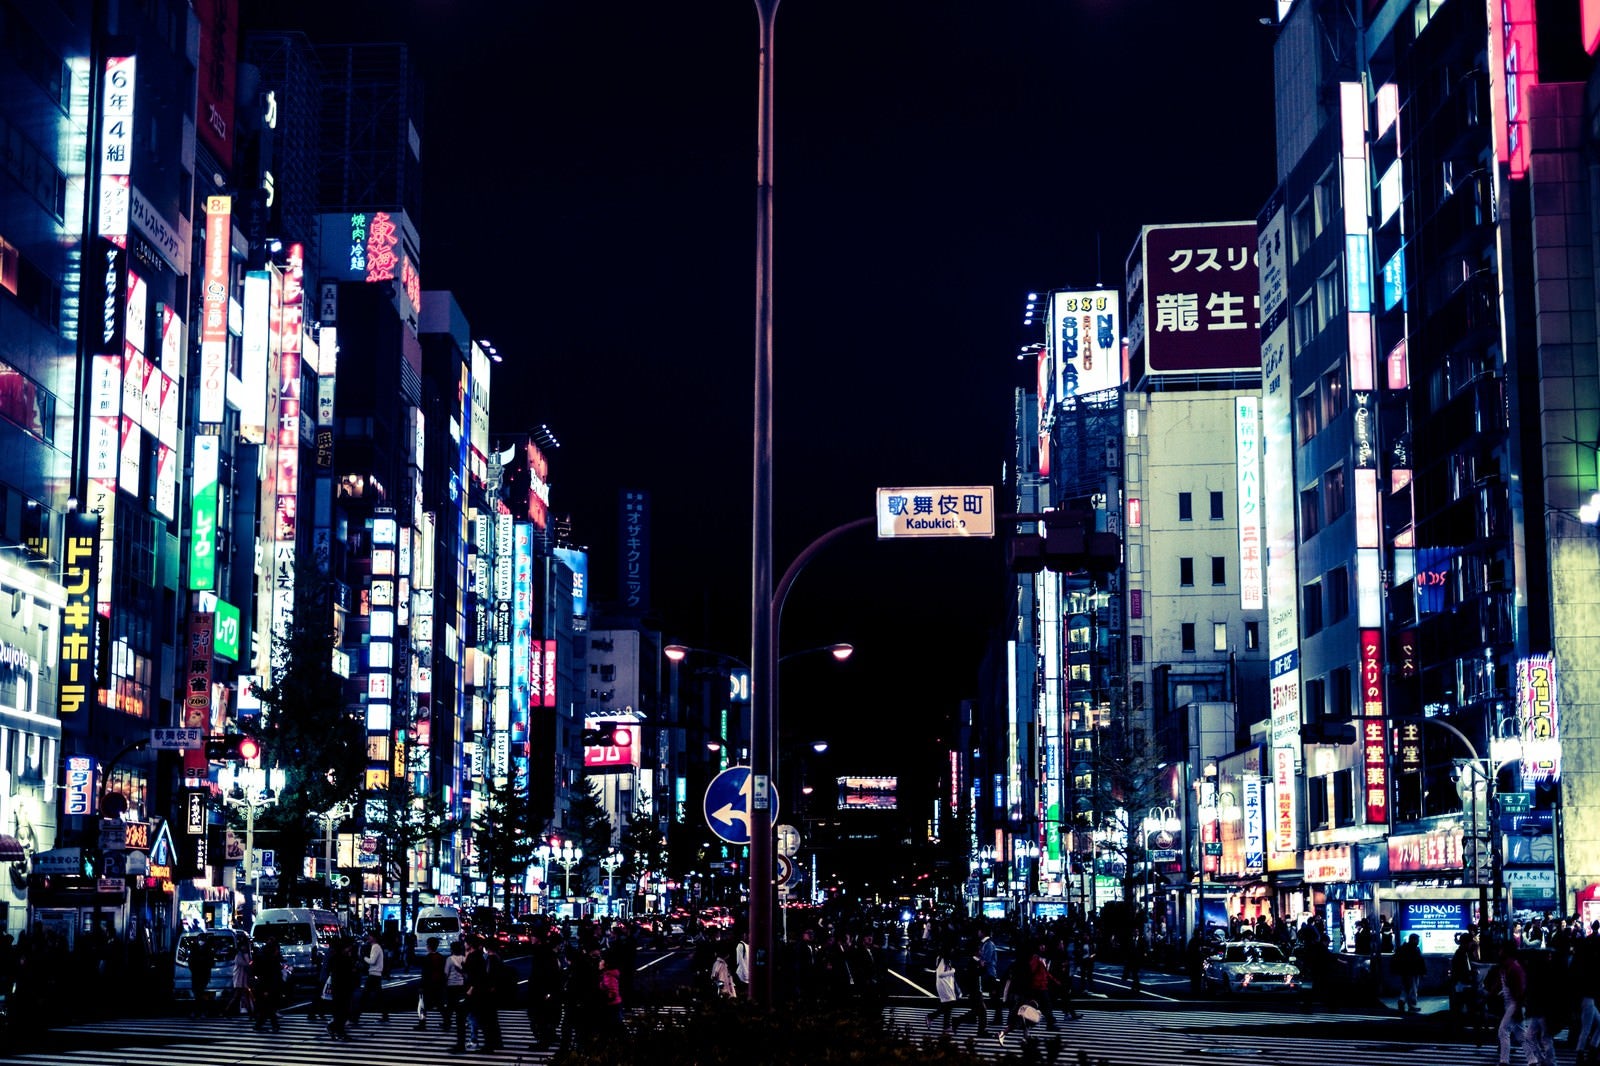 「眠らない街-歌舞伎町」の写真